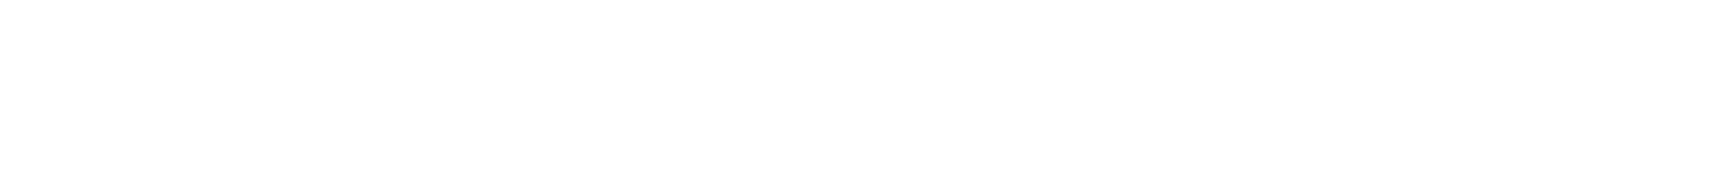 CMHE_Center for Maternal Health Equity Logo_White